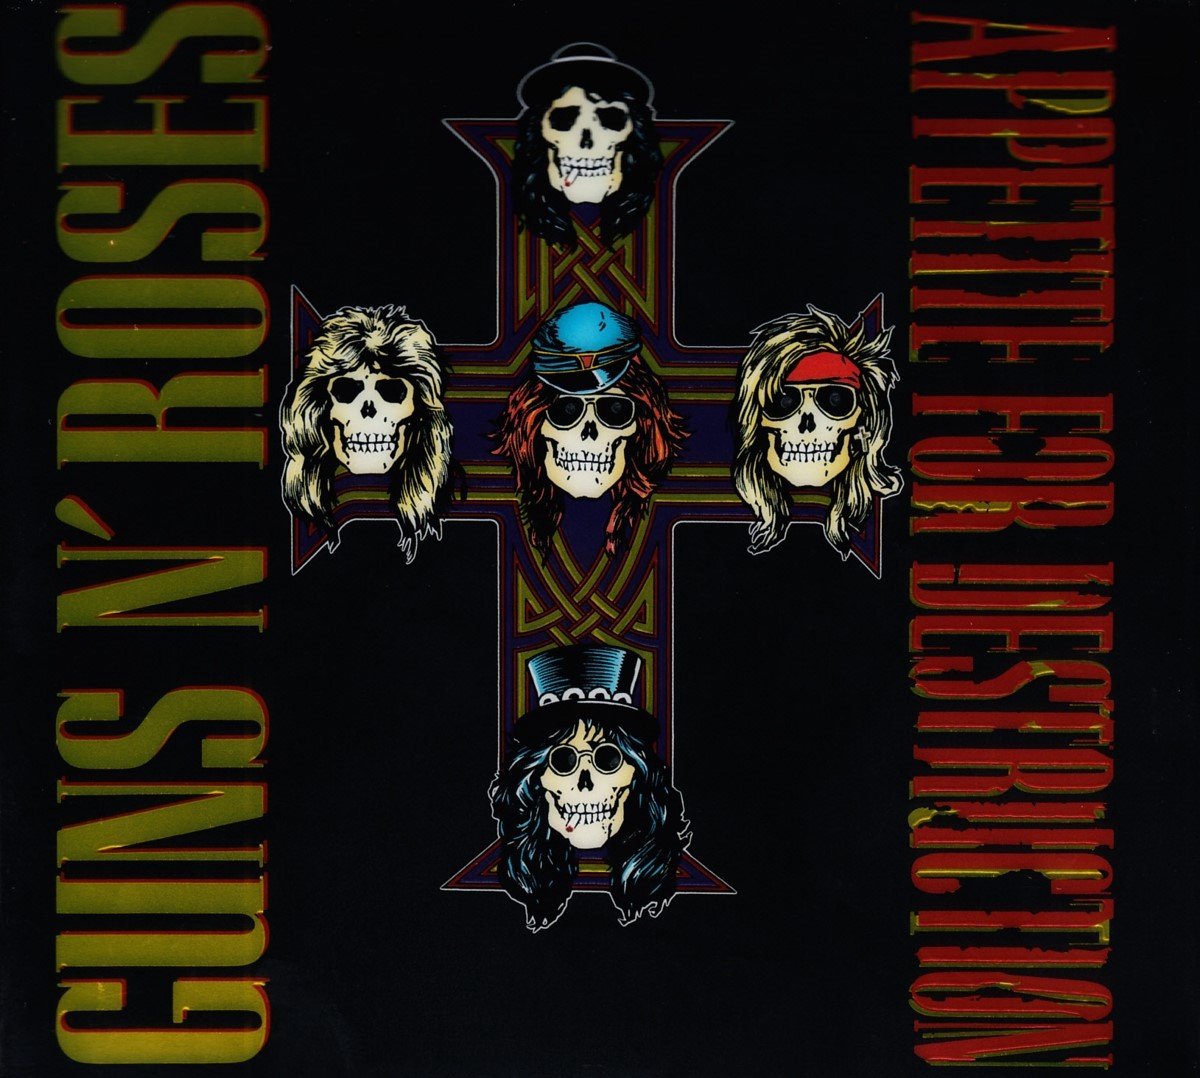 Guns N' Roses Appetite for Destruction 2 CD Deluxe Edition 30